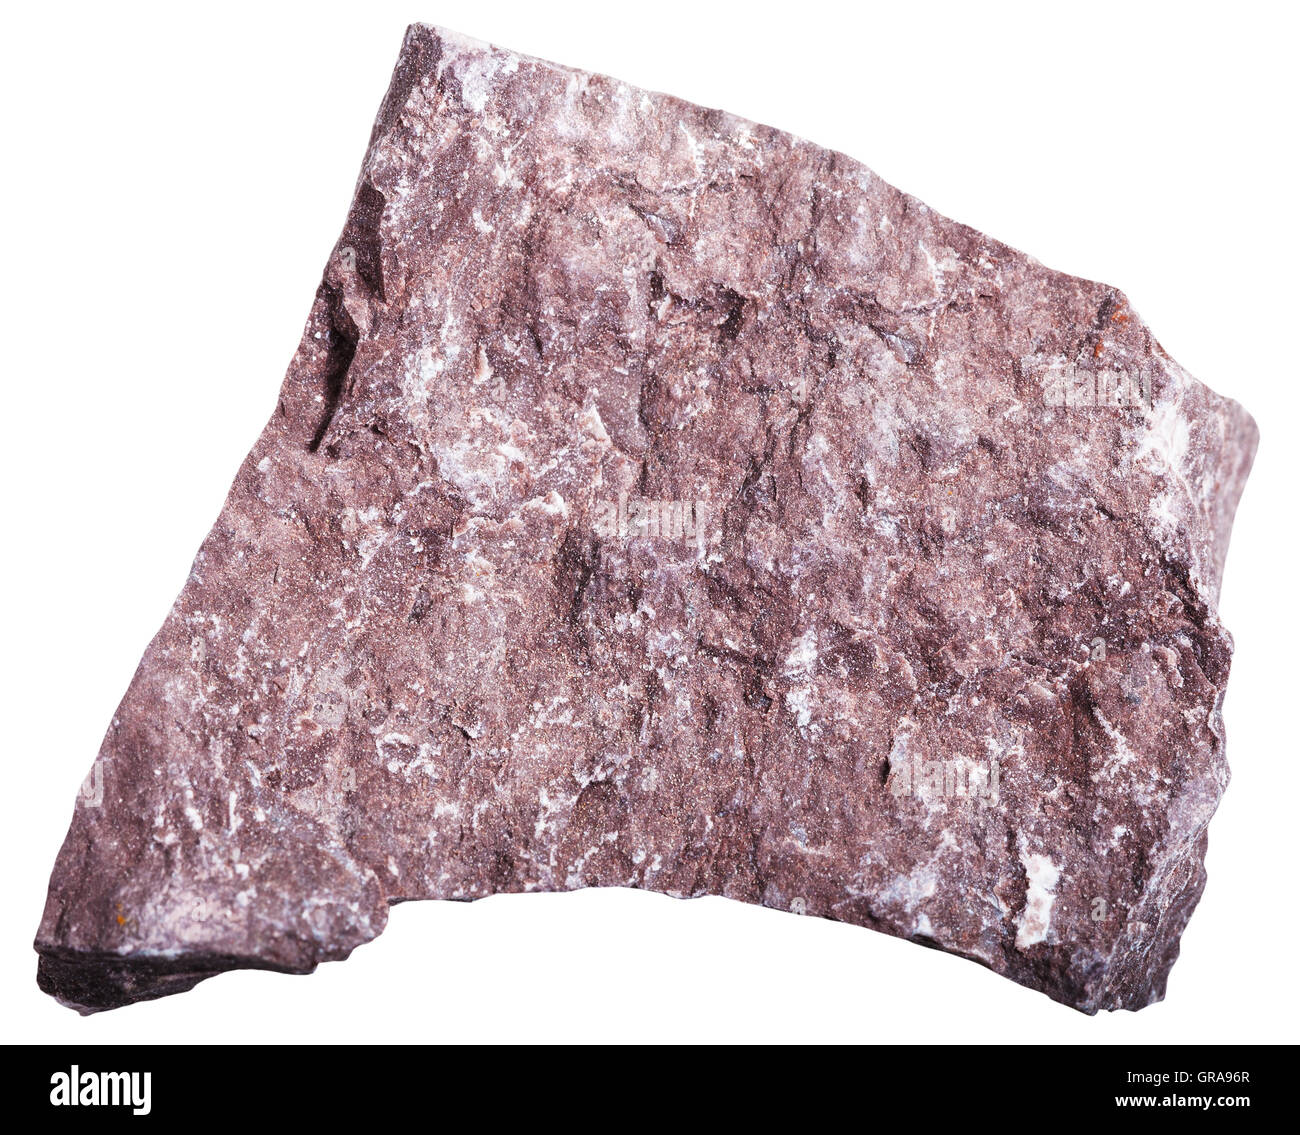 Makroaufnahmen von Sedimentgestein Proben - Kalksteinen Mineral isoliert auf weißem Hintergrund Stockfoto